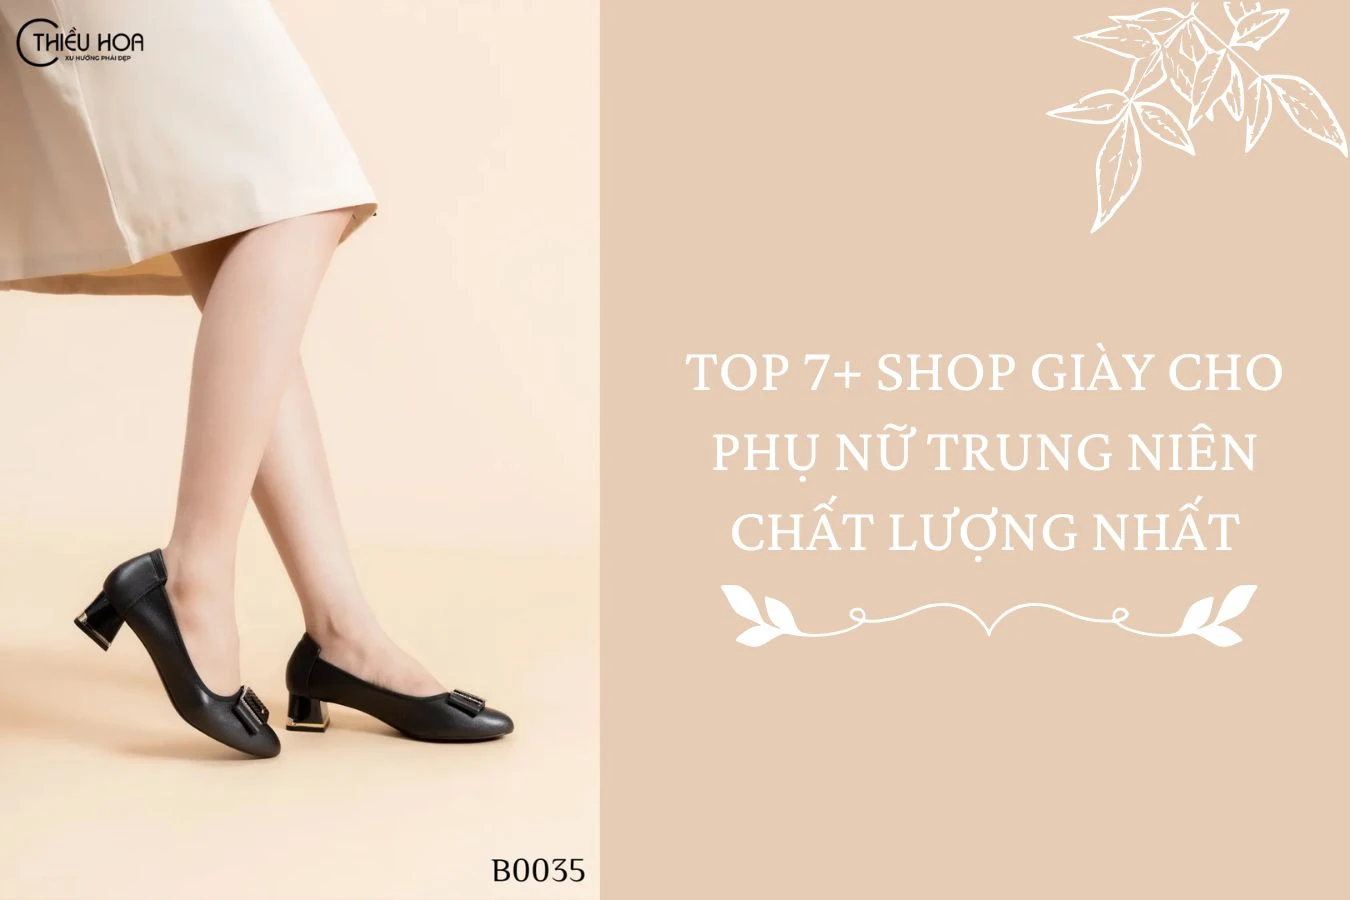 TOP 7+ shop giày cho phụ nữ trung niên chất lượng nhất